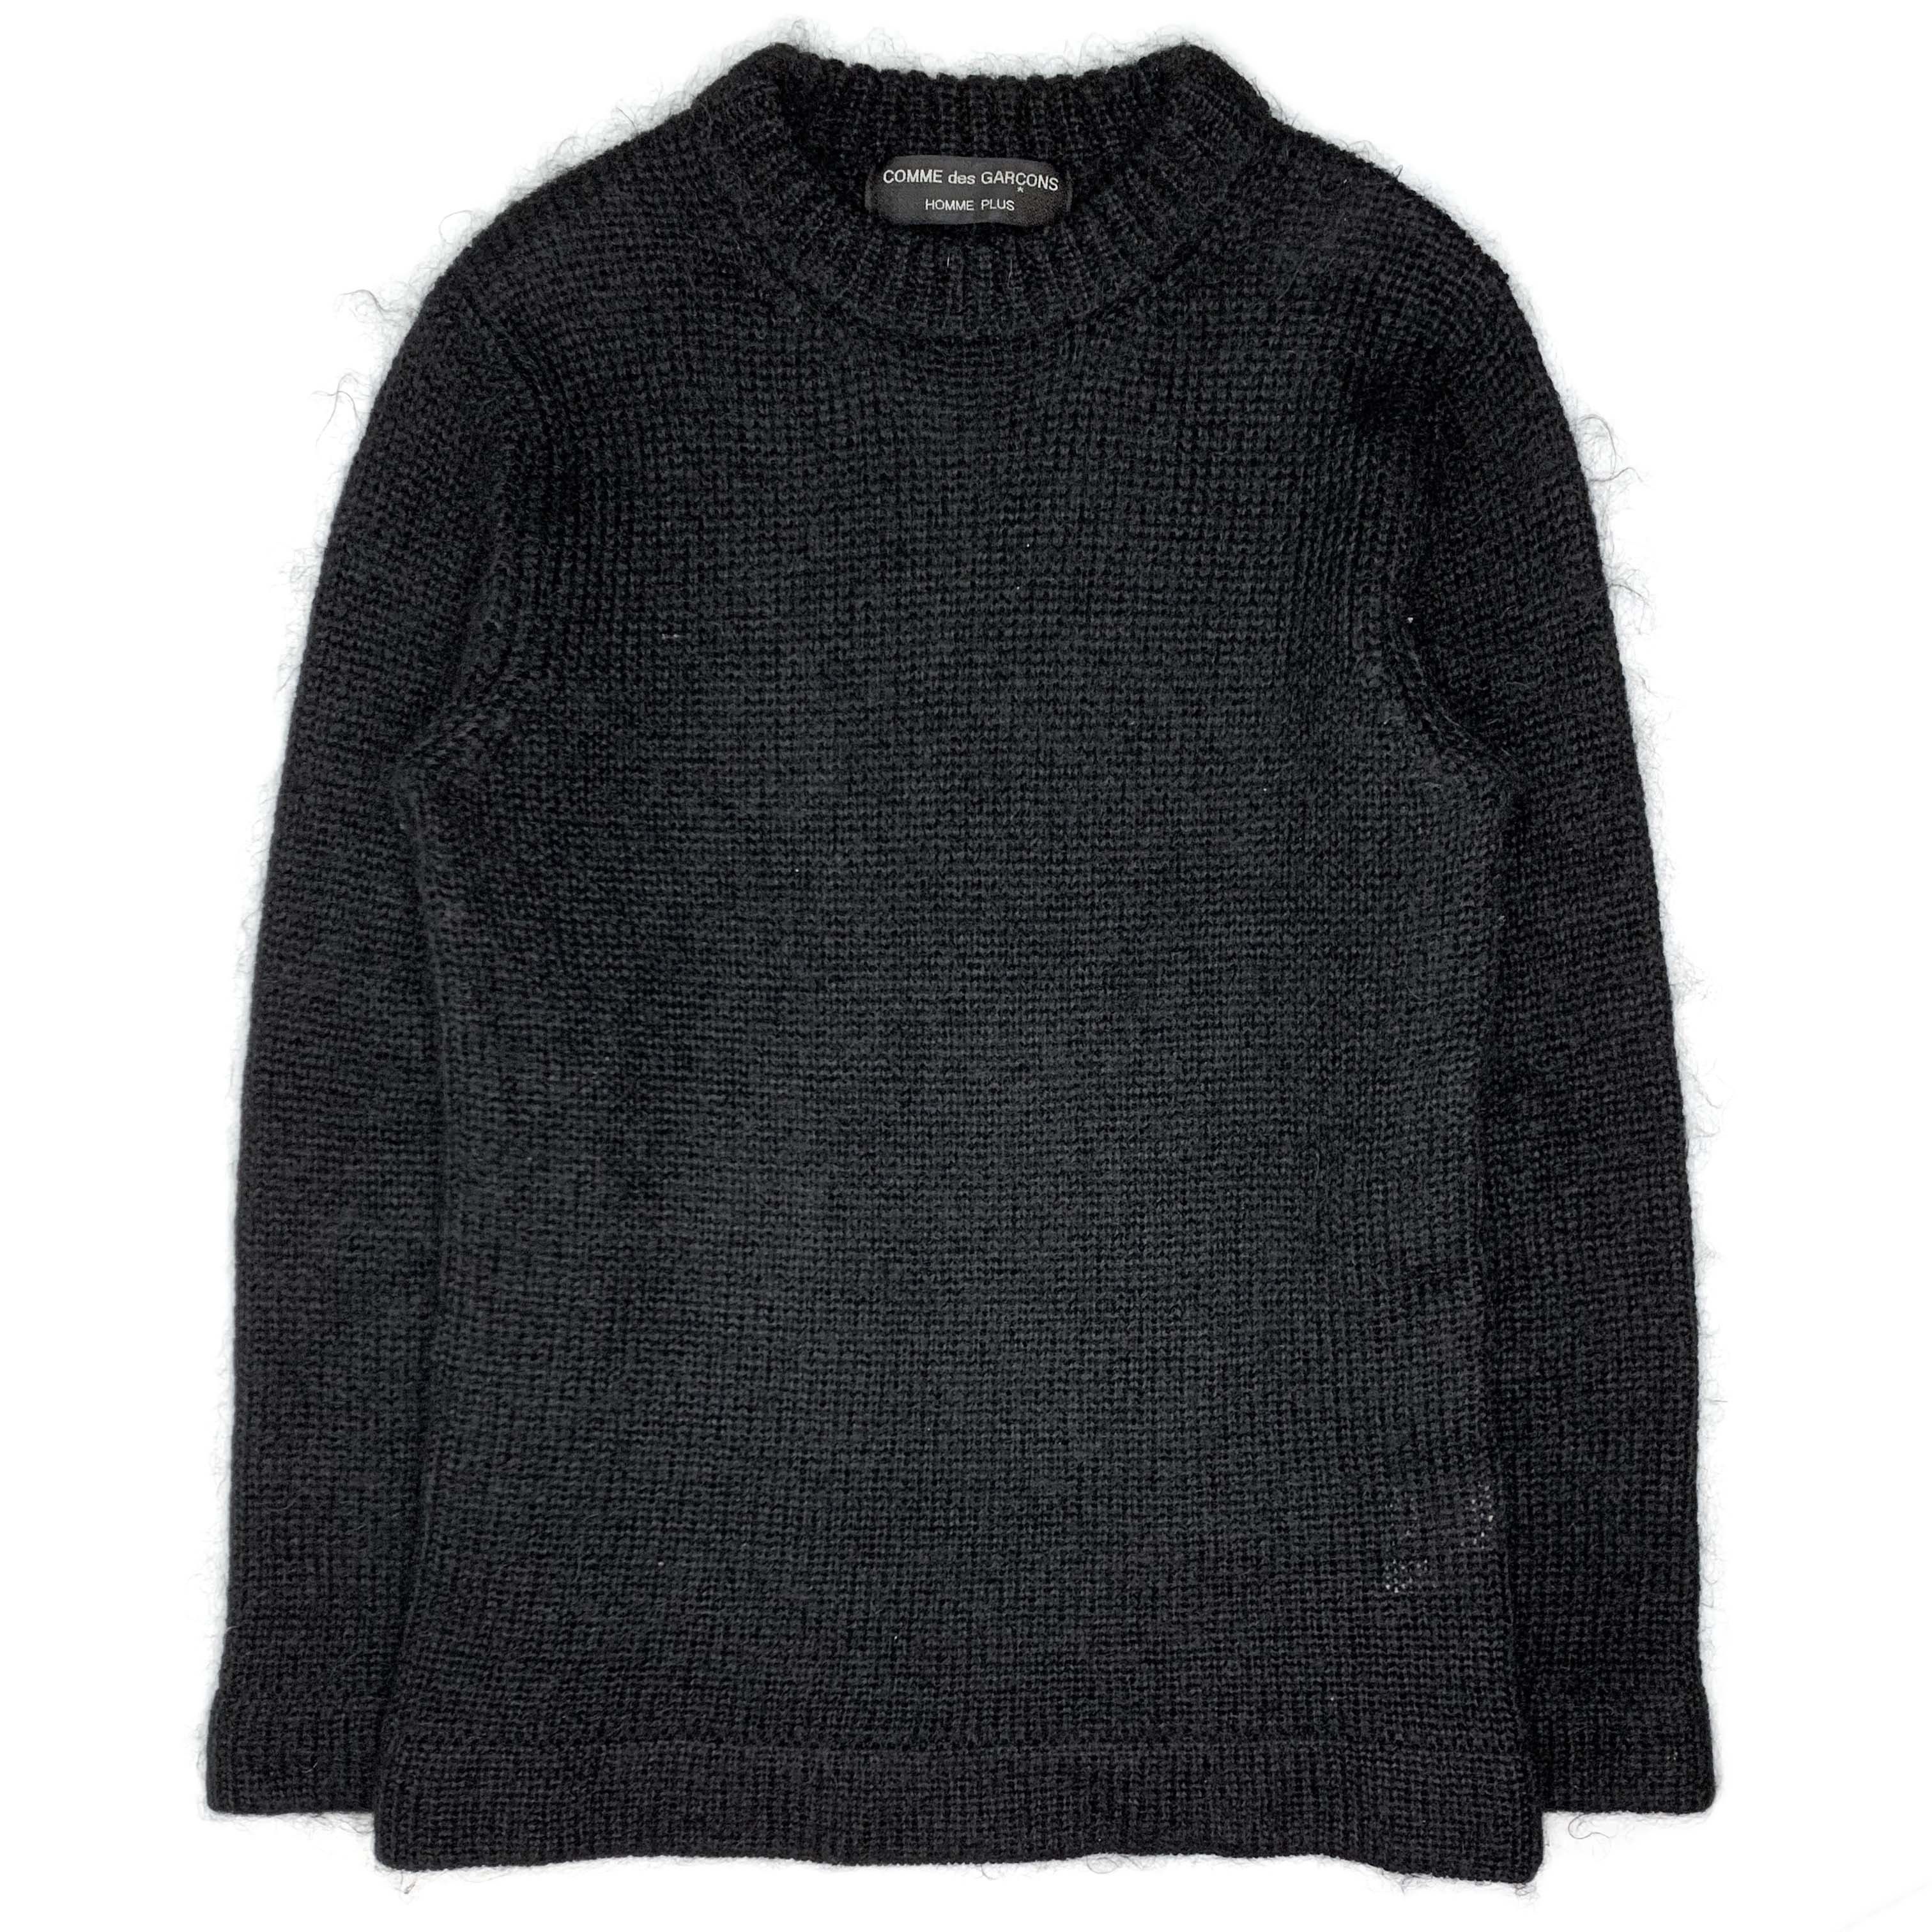 AW95 Knit Wool-Nylon Sweater - 1